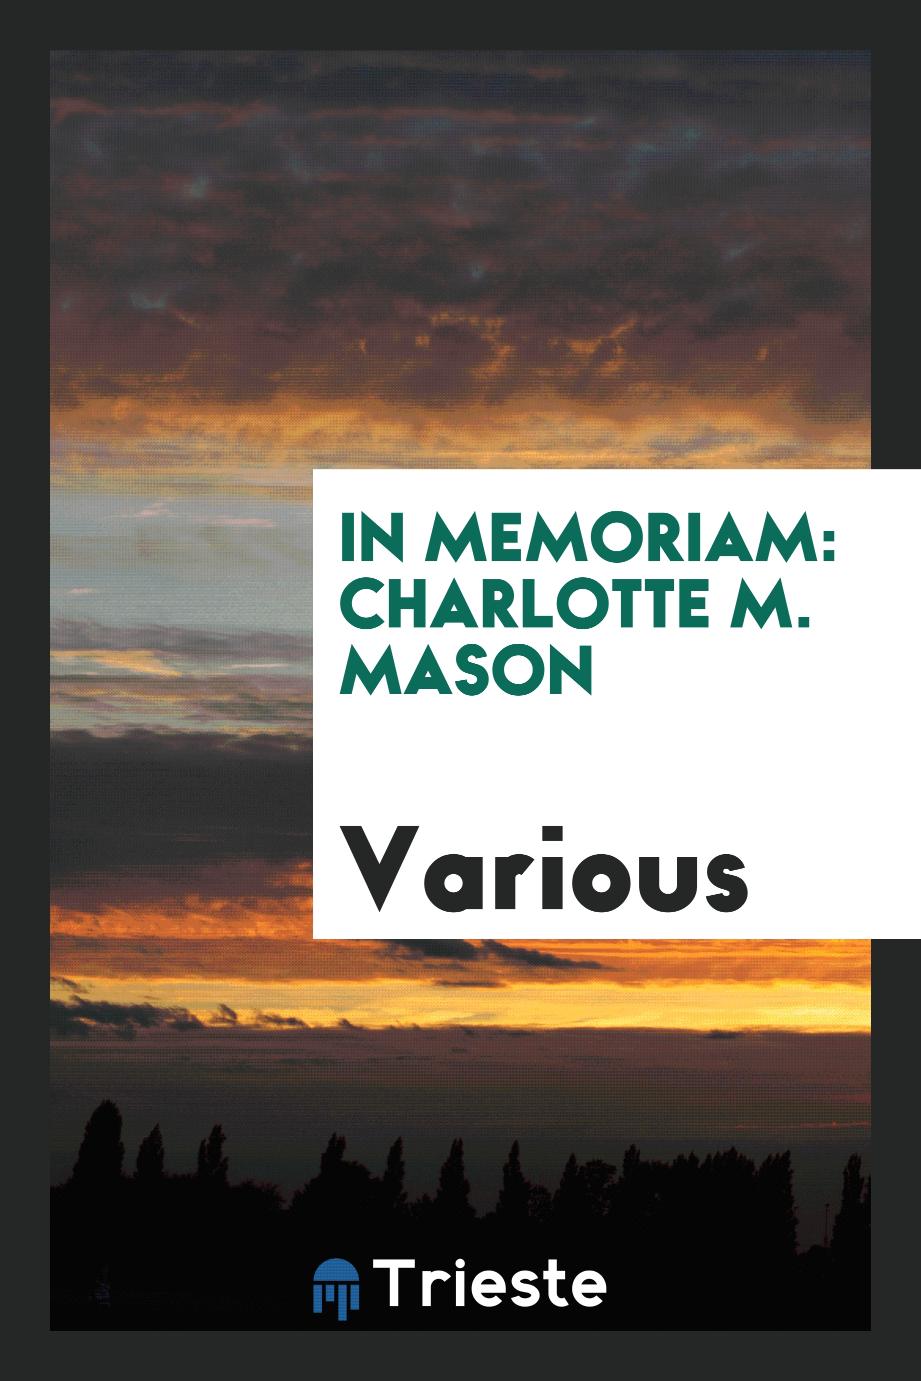 In memoriam: Charlotte M. Mason